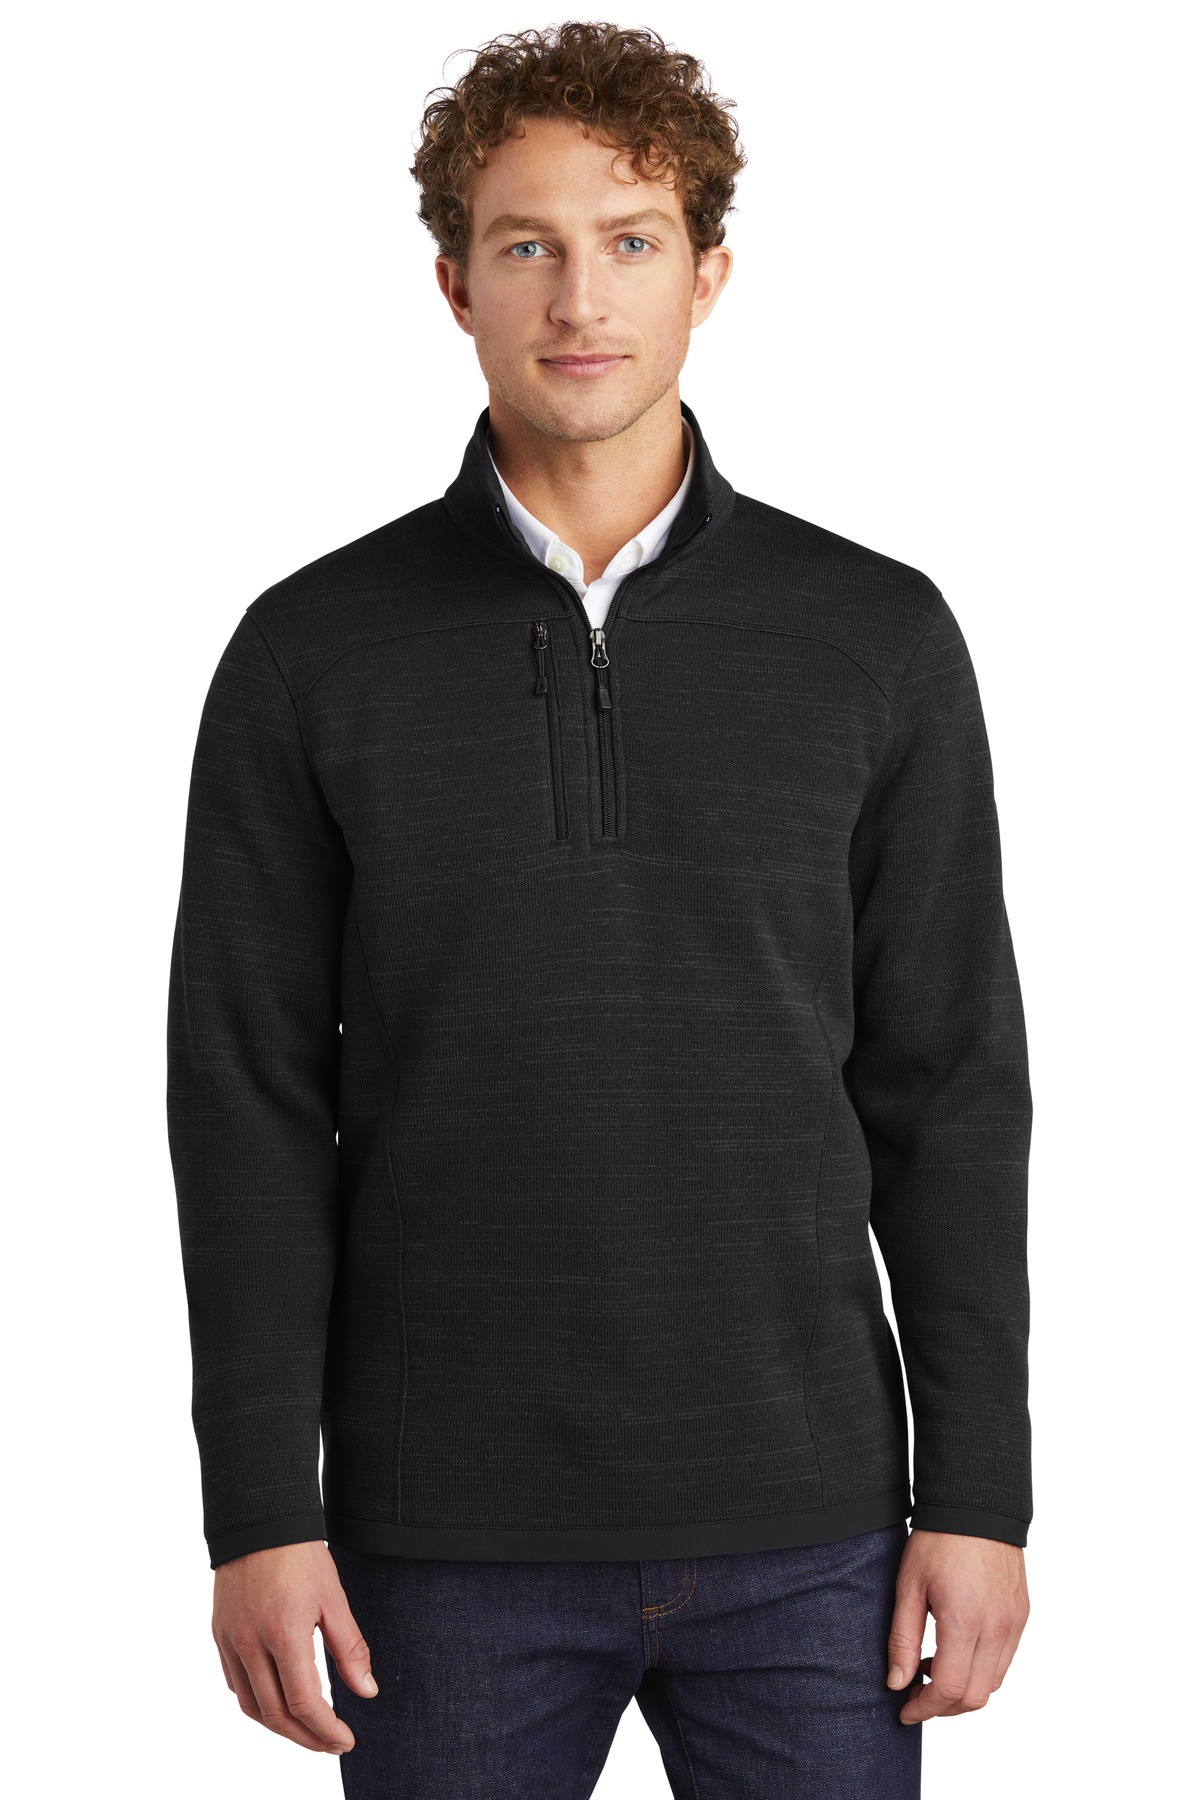 Eddie Bauer Sweater Fleece 1/4-Zip-